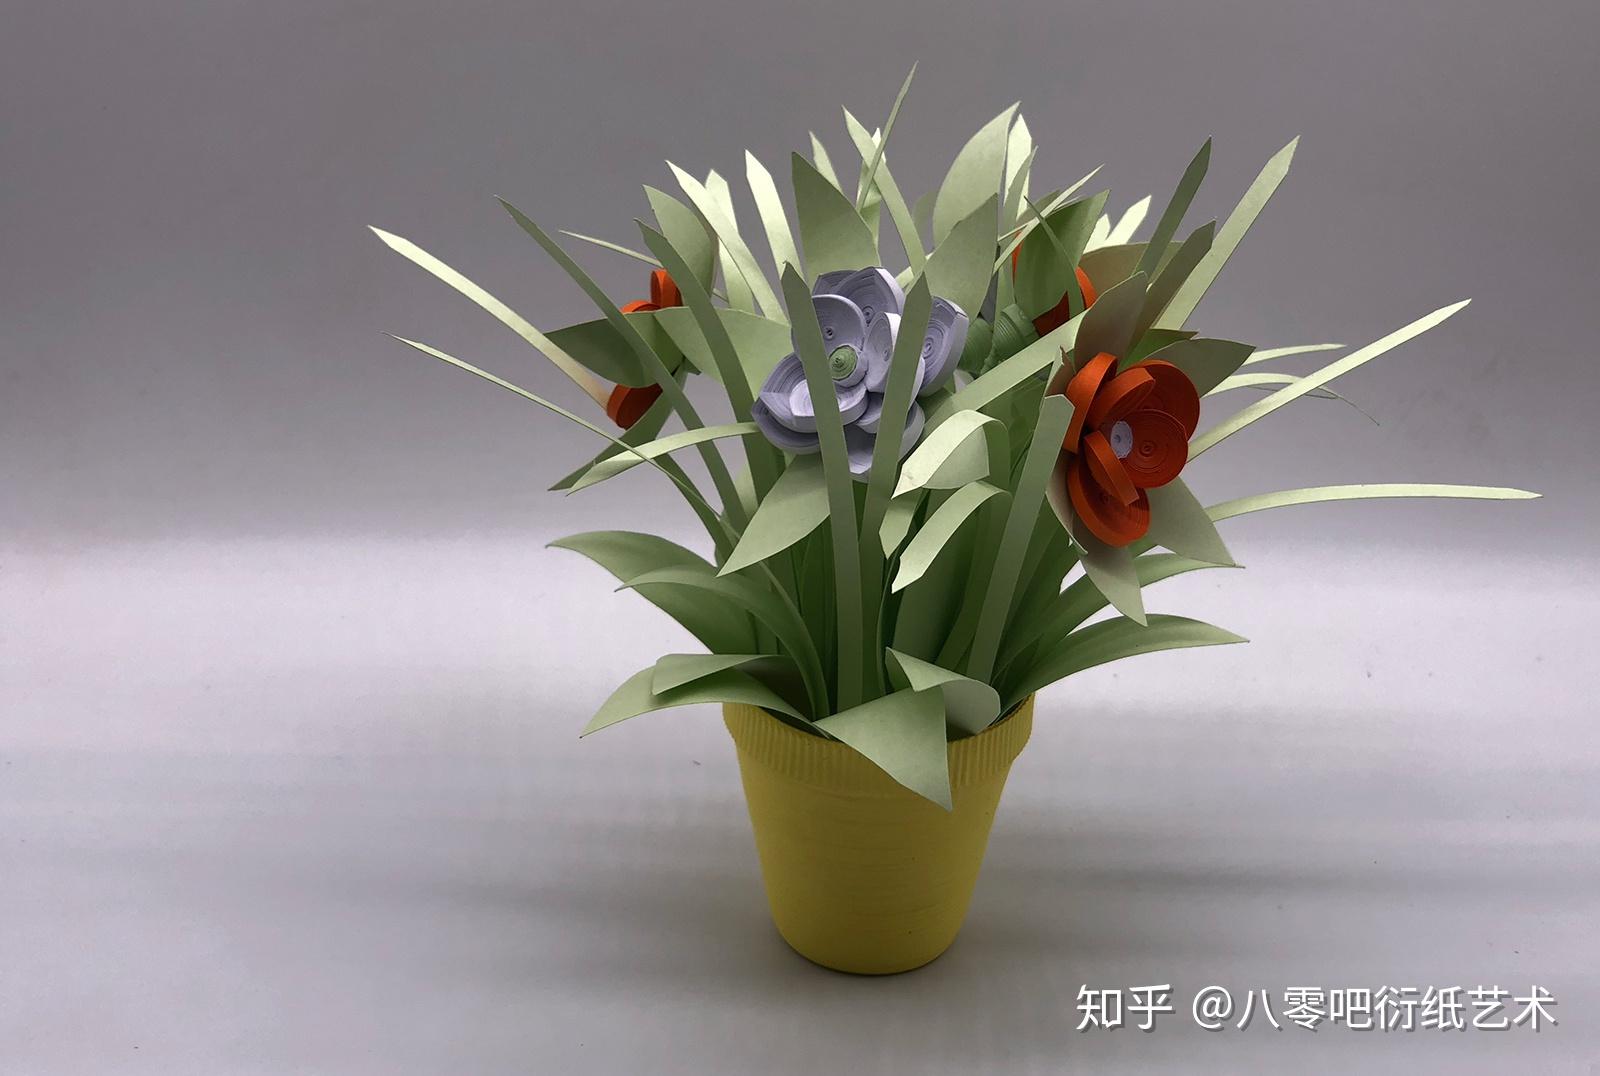 衍纸立体盆栽材料包 3D折纸手工diy套装创意摆件向日葵花束成品_虎窝淘